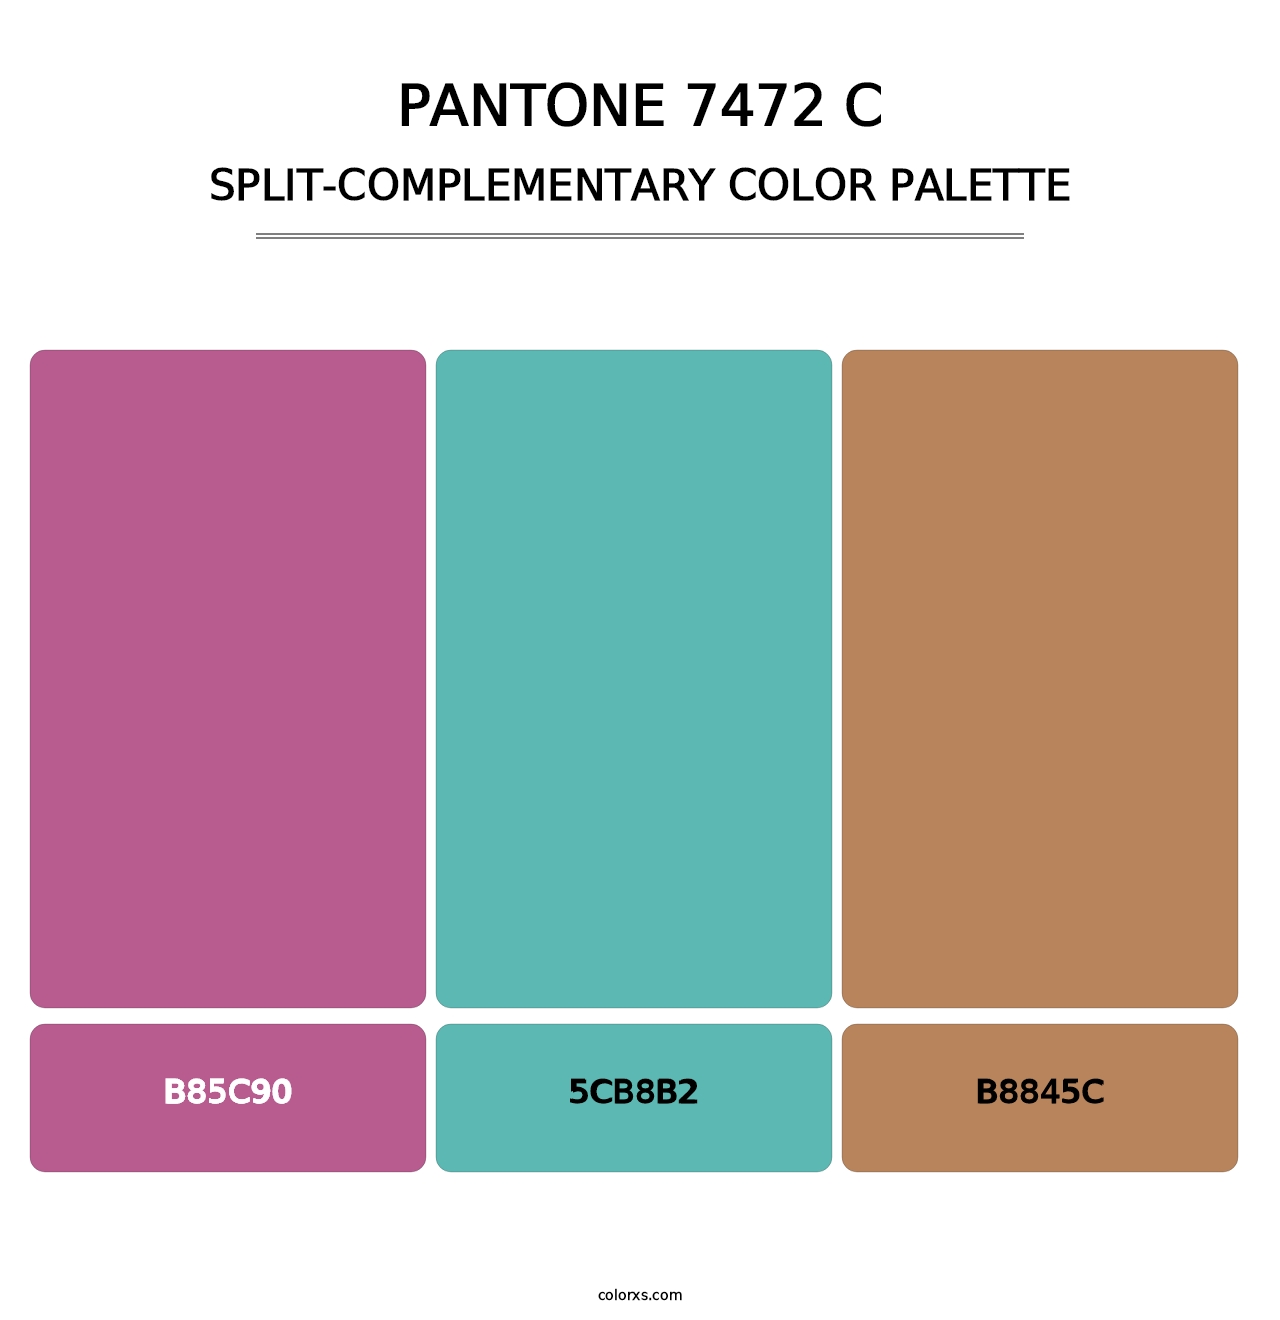 PANTONE 7472 C - Split-Complementary Color Palette